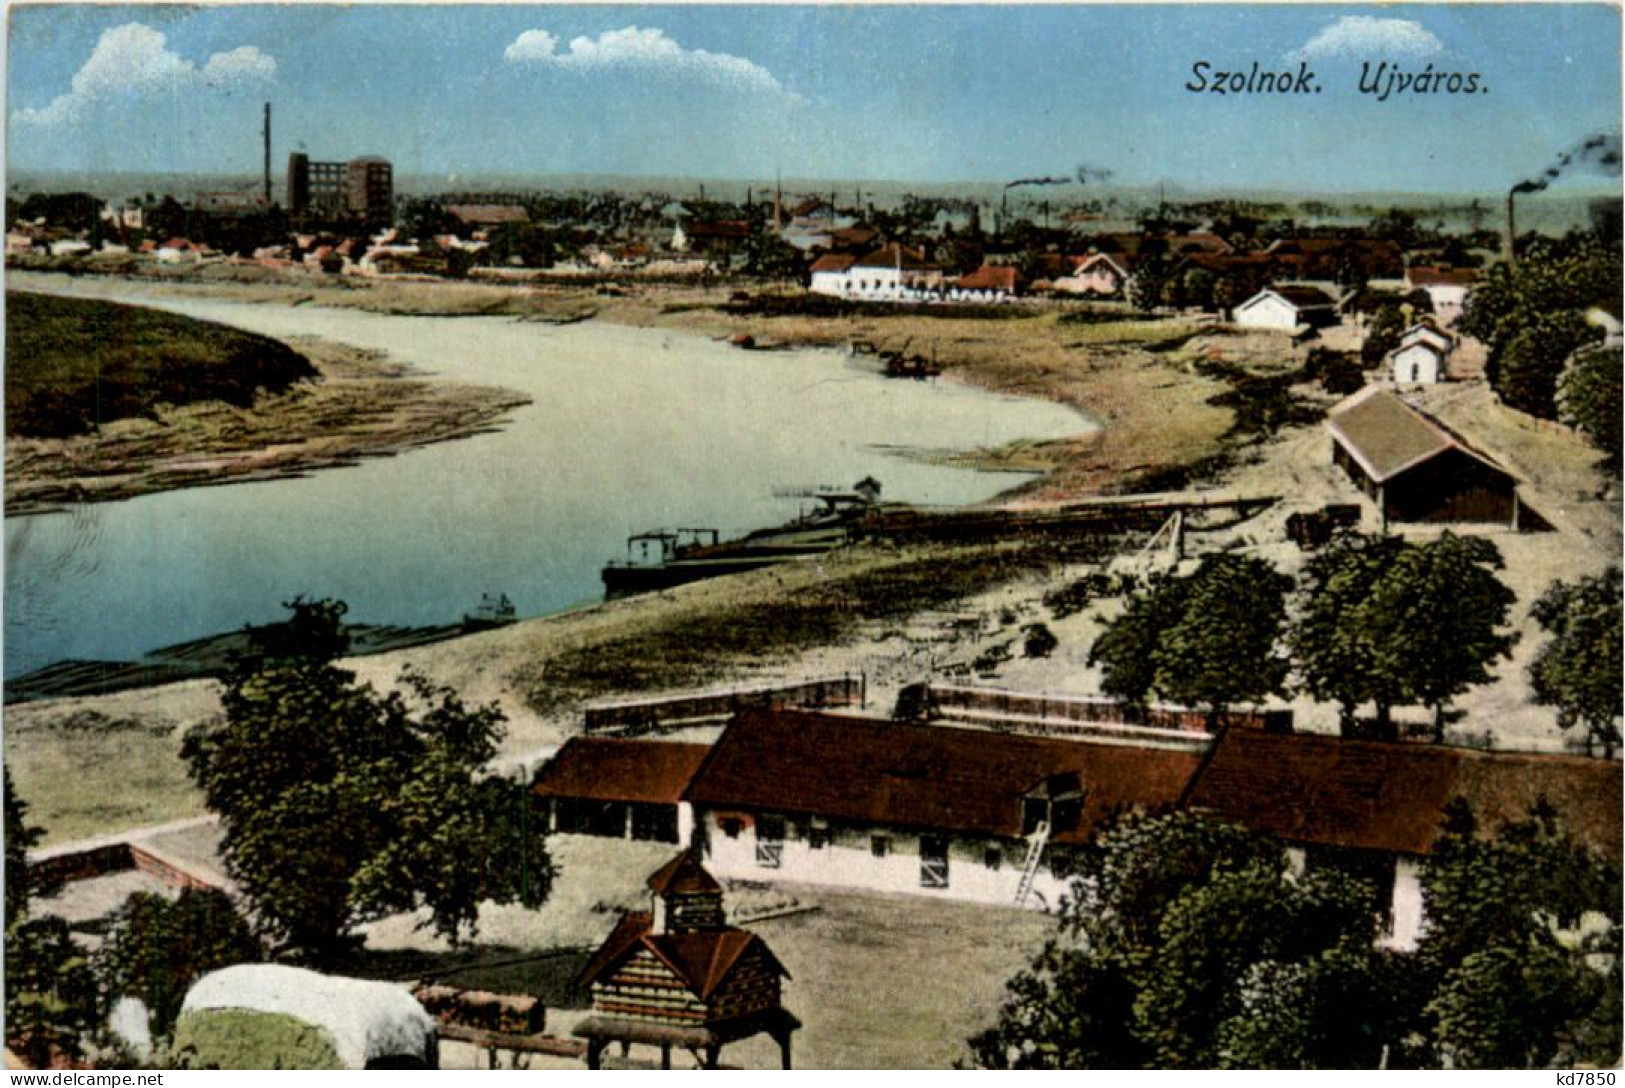 Szolnok - Ujvaros - Ungarn